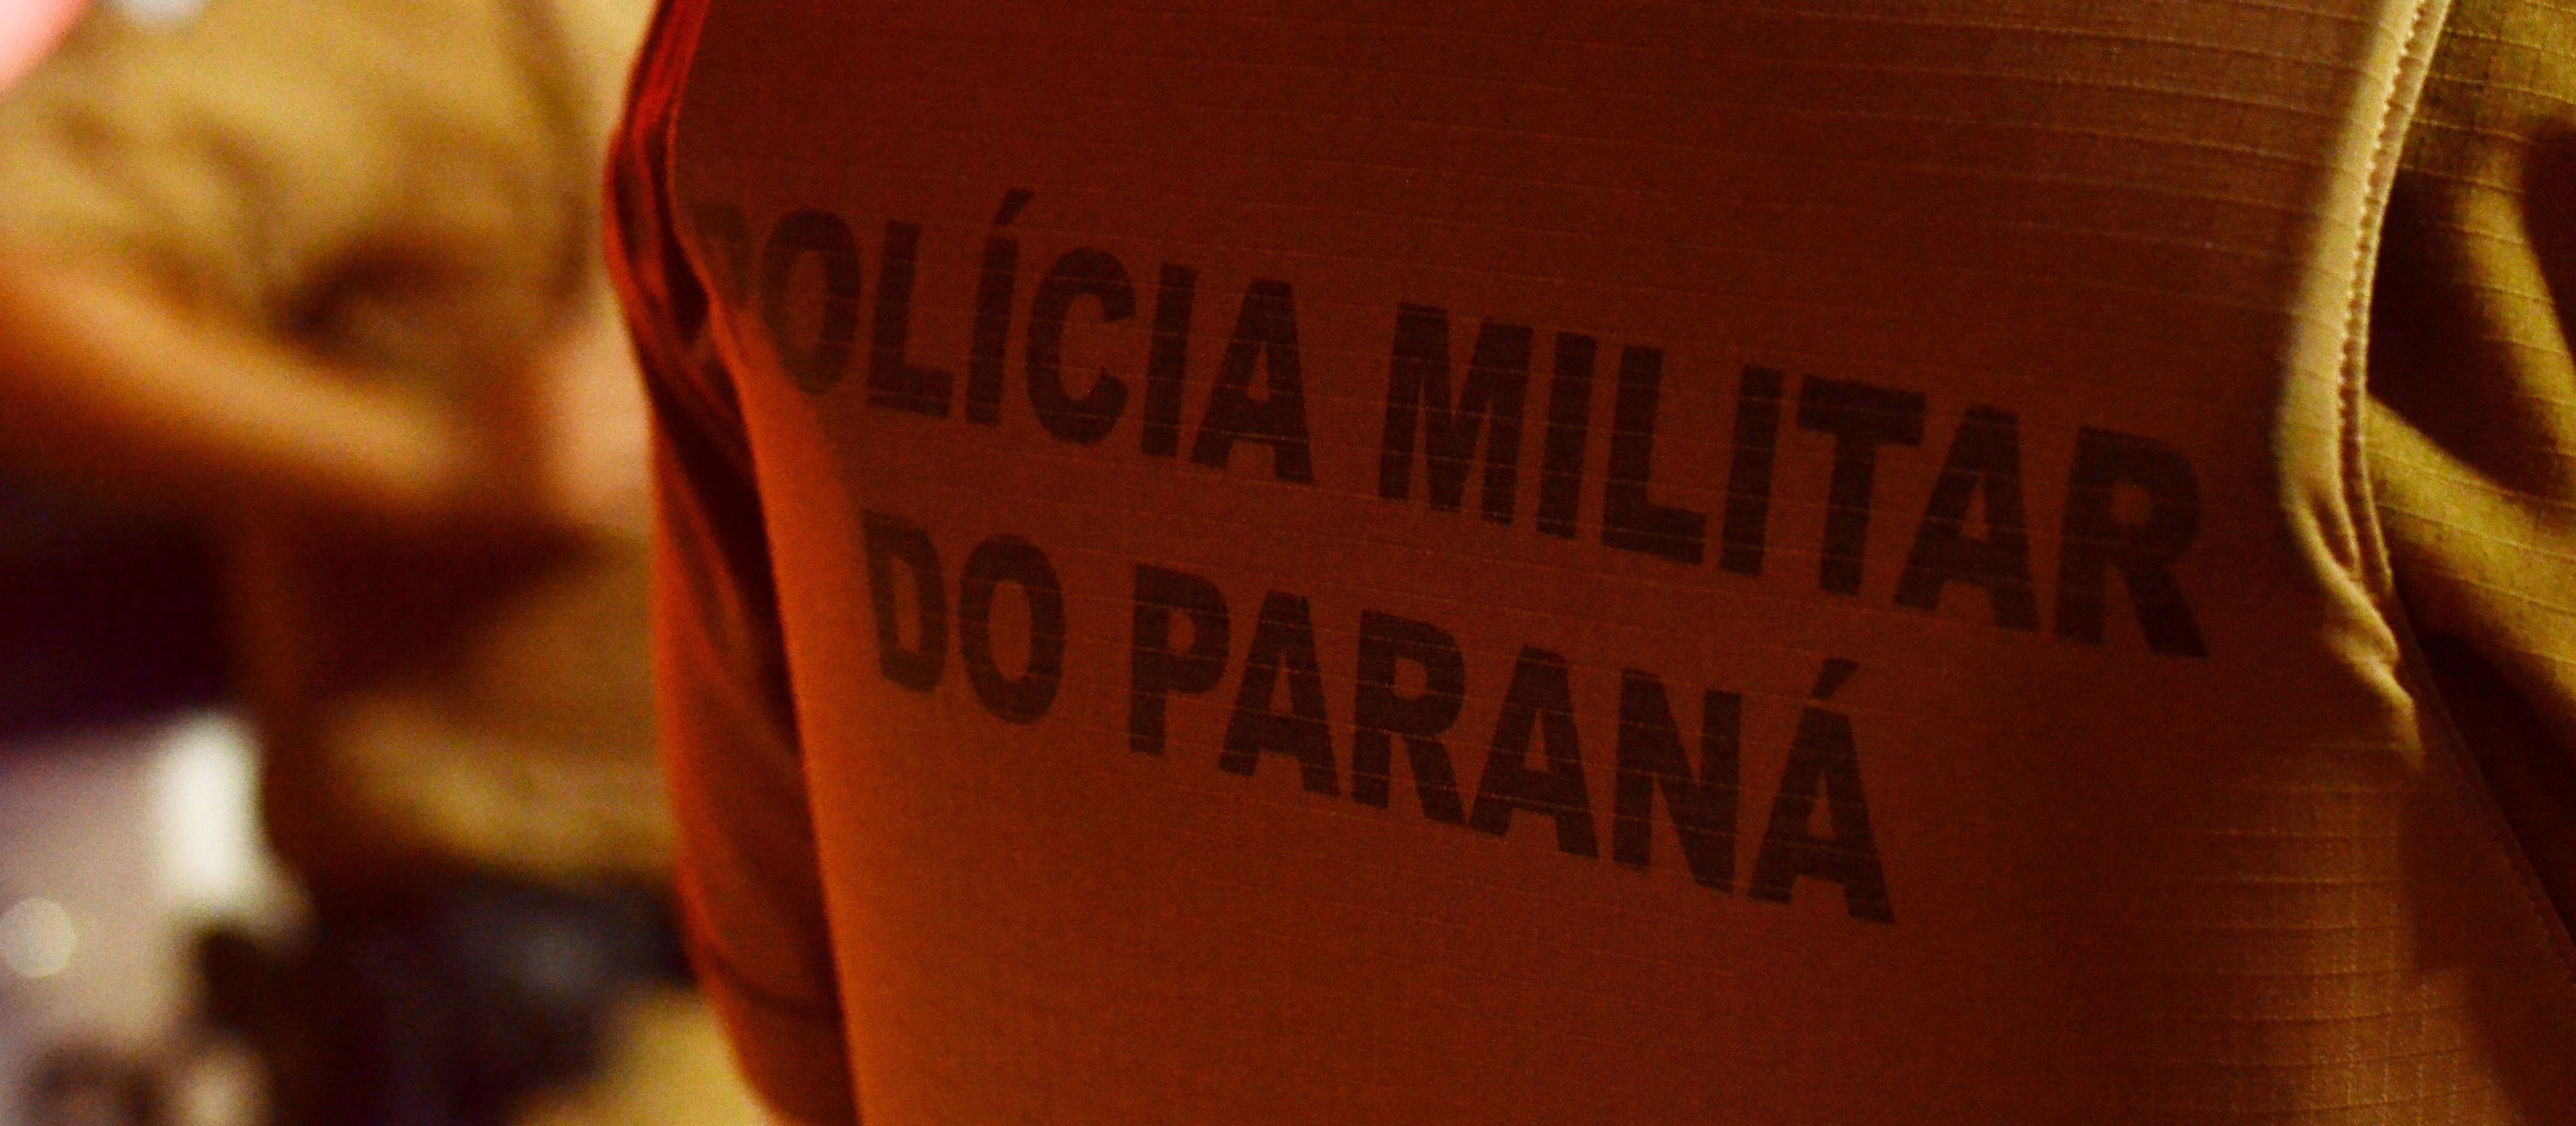 Wagner Mariano, apontado como o assassino do soldado Juliedes, é preso em Rondônia